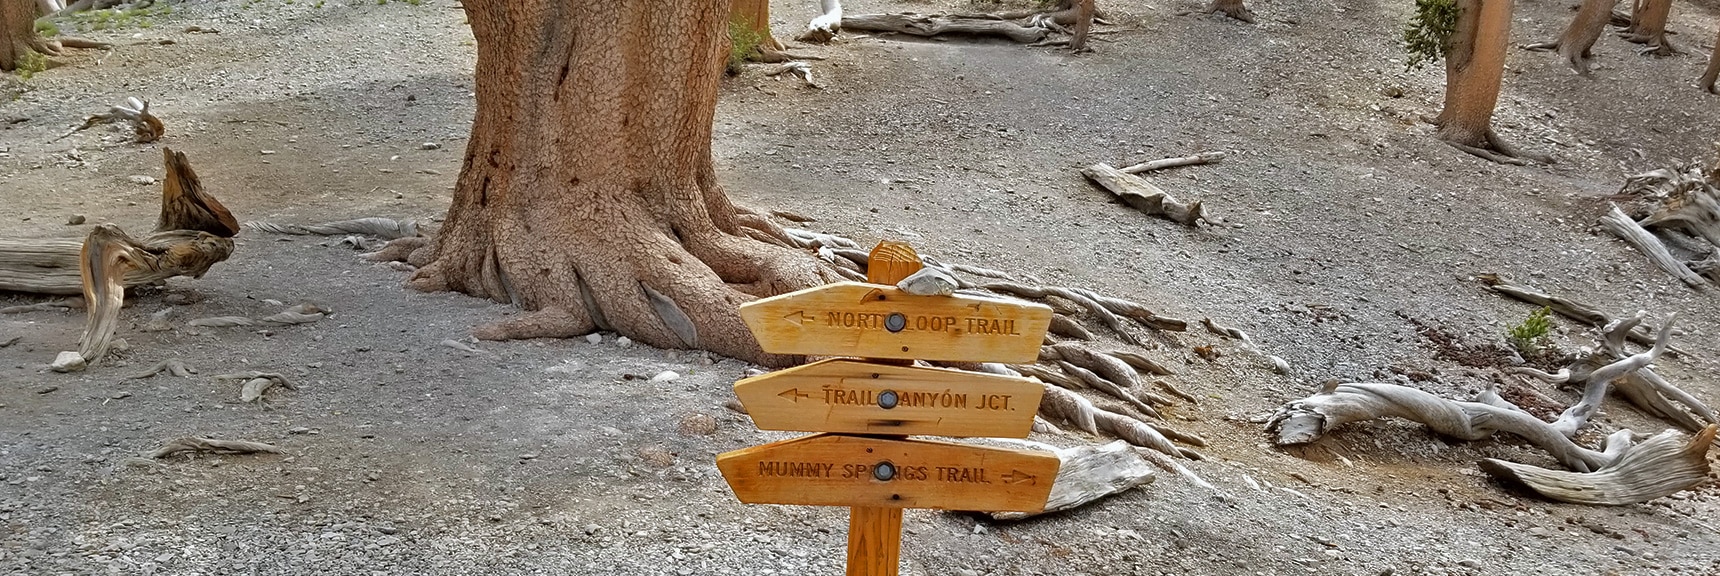 Trail Sign at Raintree | Mummy Mountain NE Cliffs Descent | Mt Charleston Wilderness | Spring Mountains, Nevada